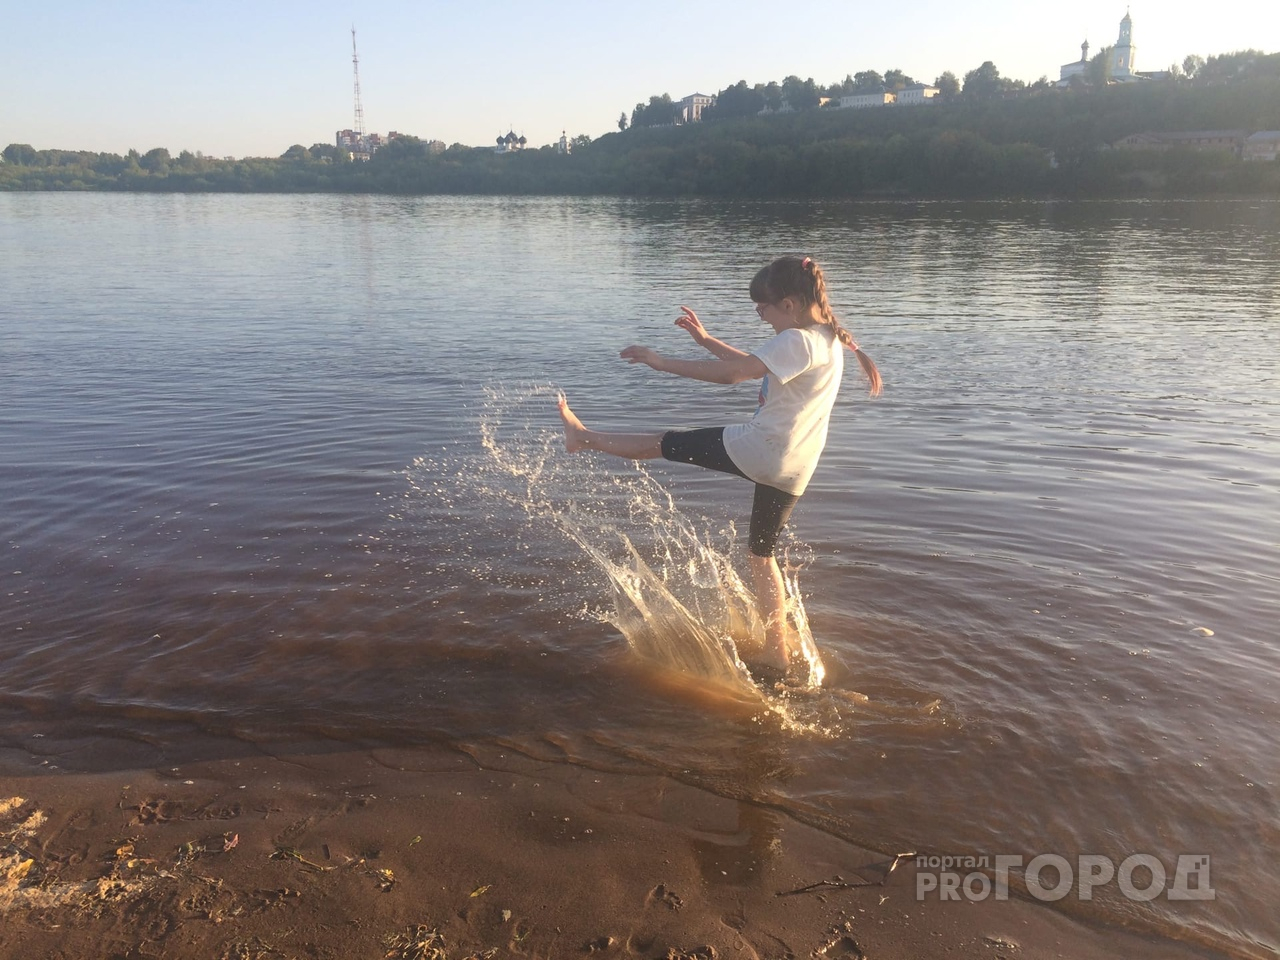 Тепло и солнечно: известен прогноз погоды на выходные в Кирове